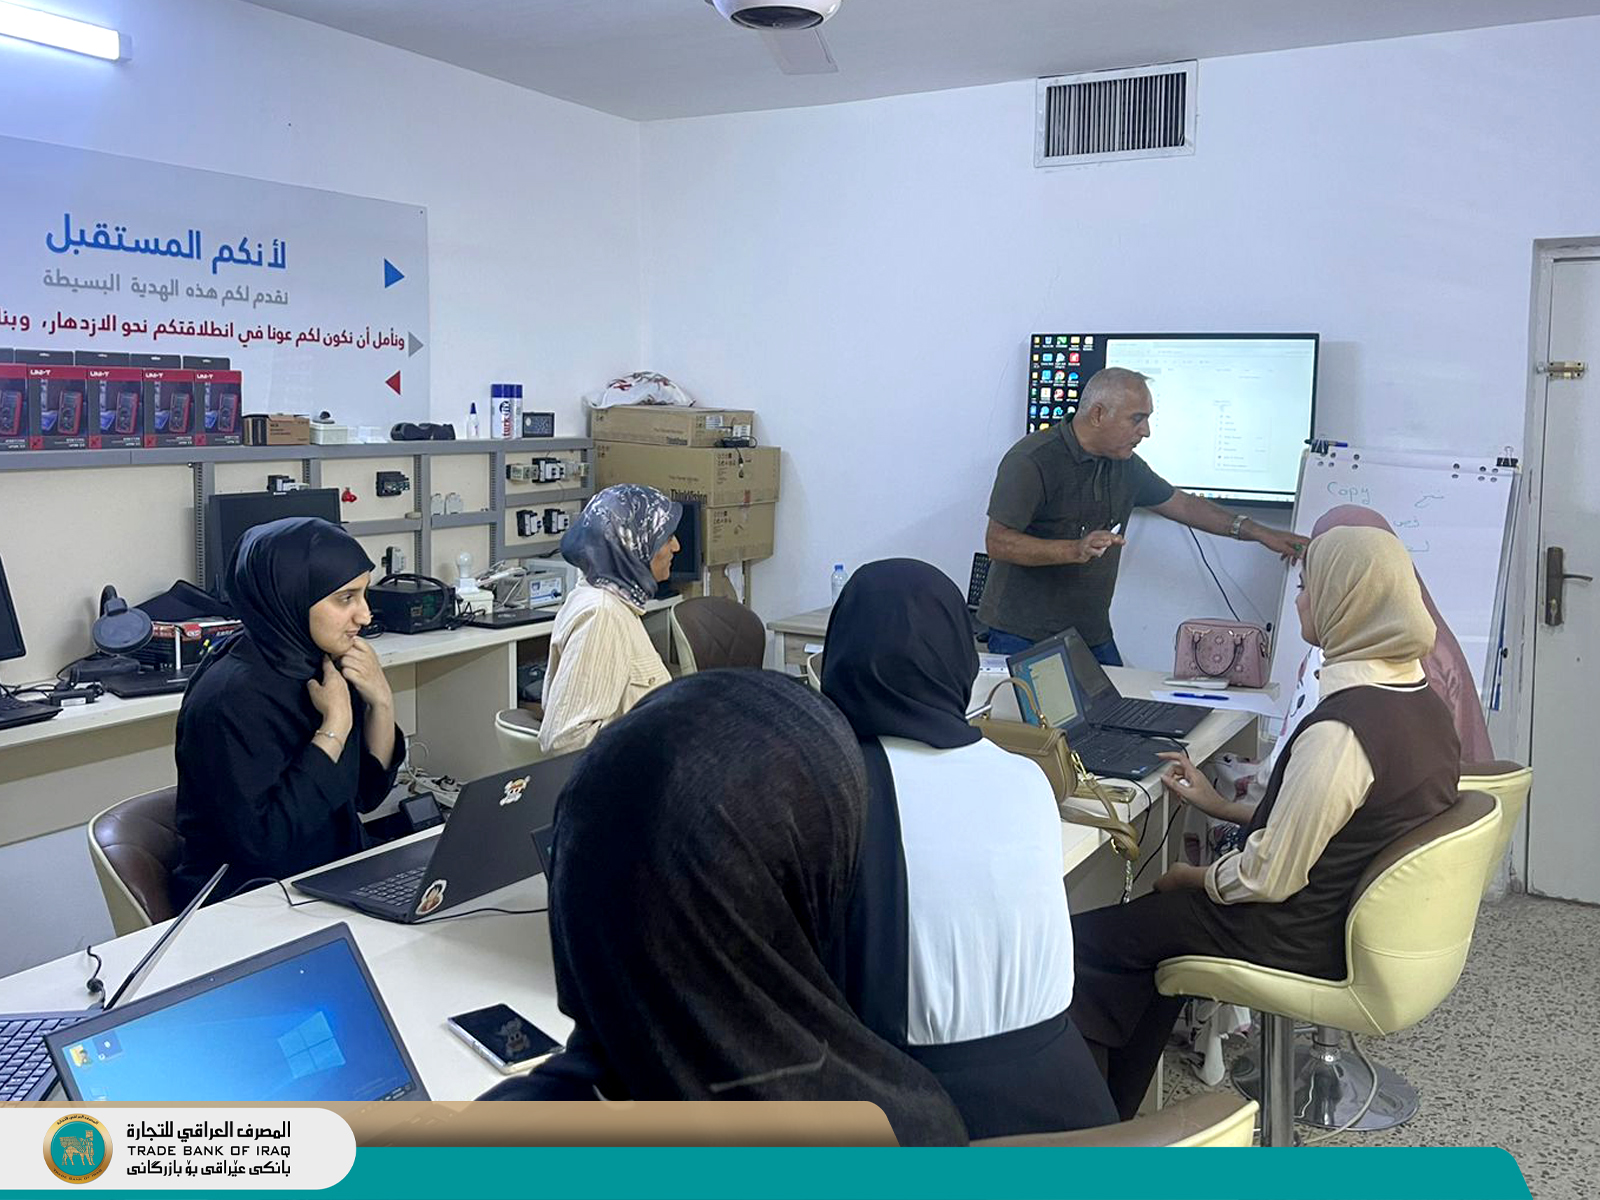 تطبيقاً للإستراتيجية الوطنية للمرأة العراقية التي أطلقتها الأمانة العامة لمجلس الوزراء، أقام المصرف العراقي للتجارة دورة تدريبية على برامج الحاسوب لعدد من الطالبات